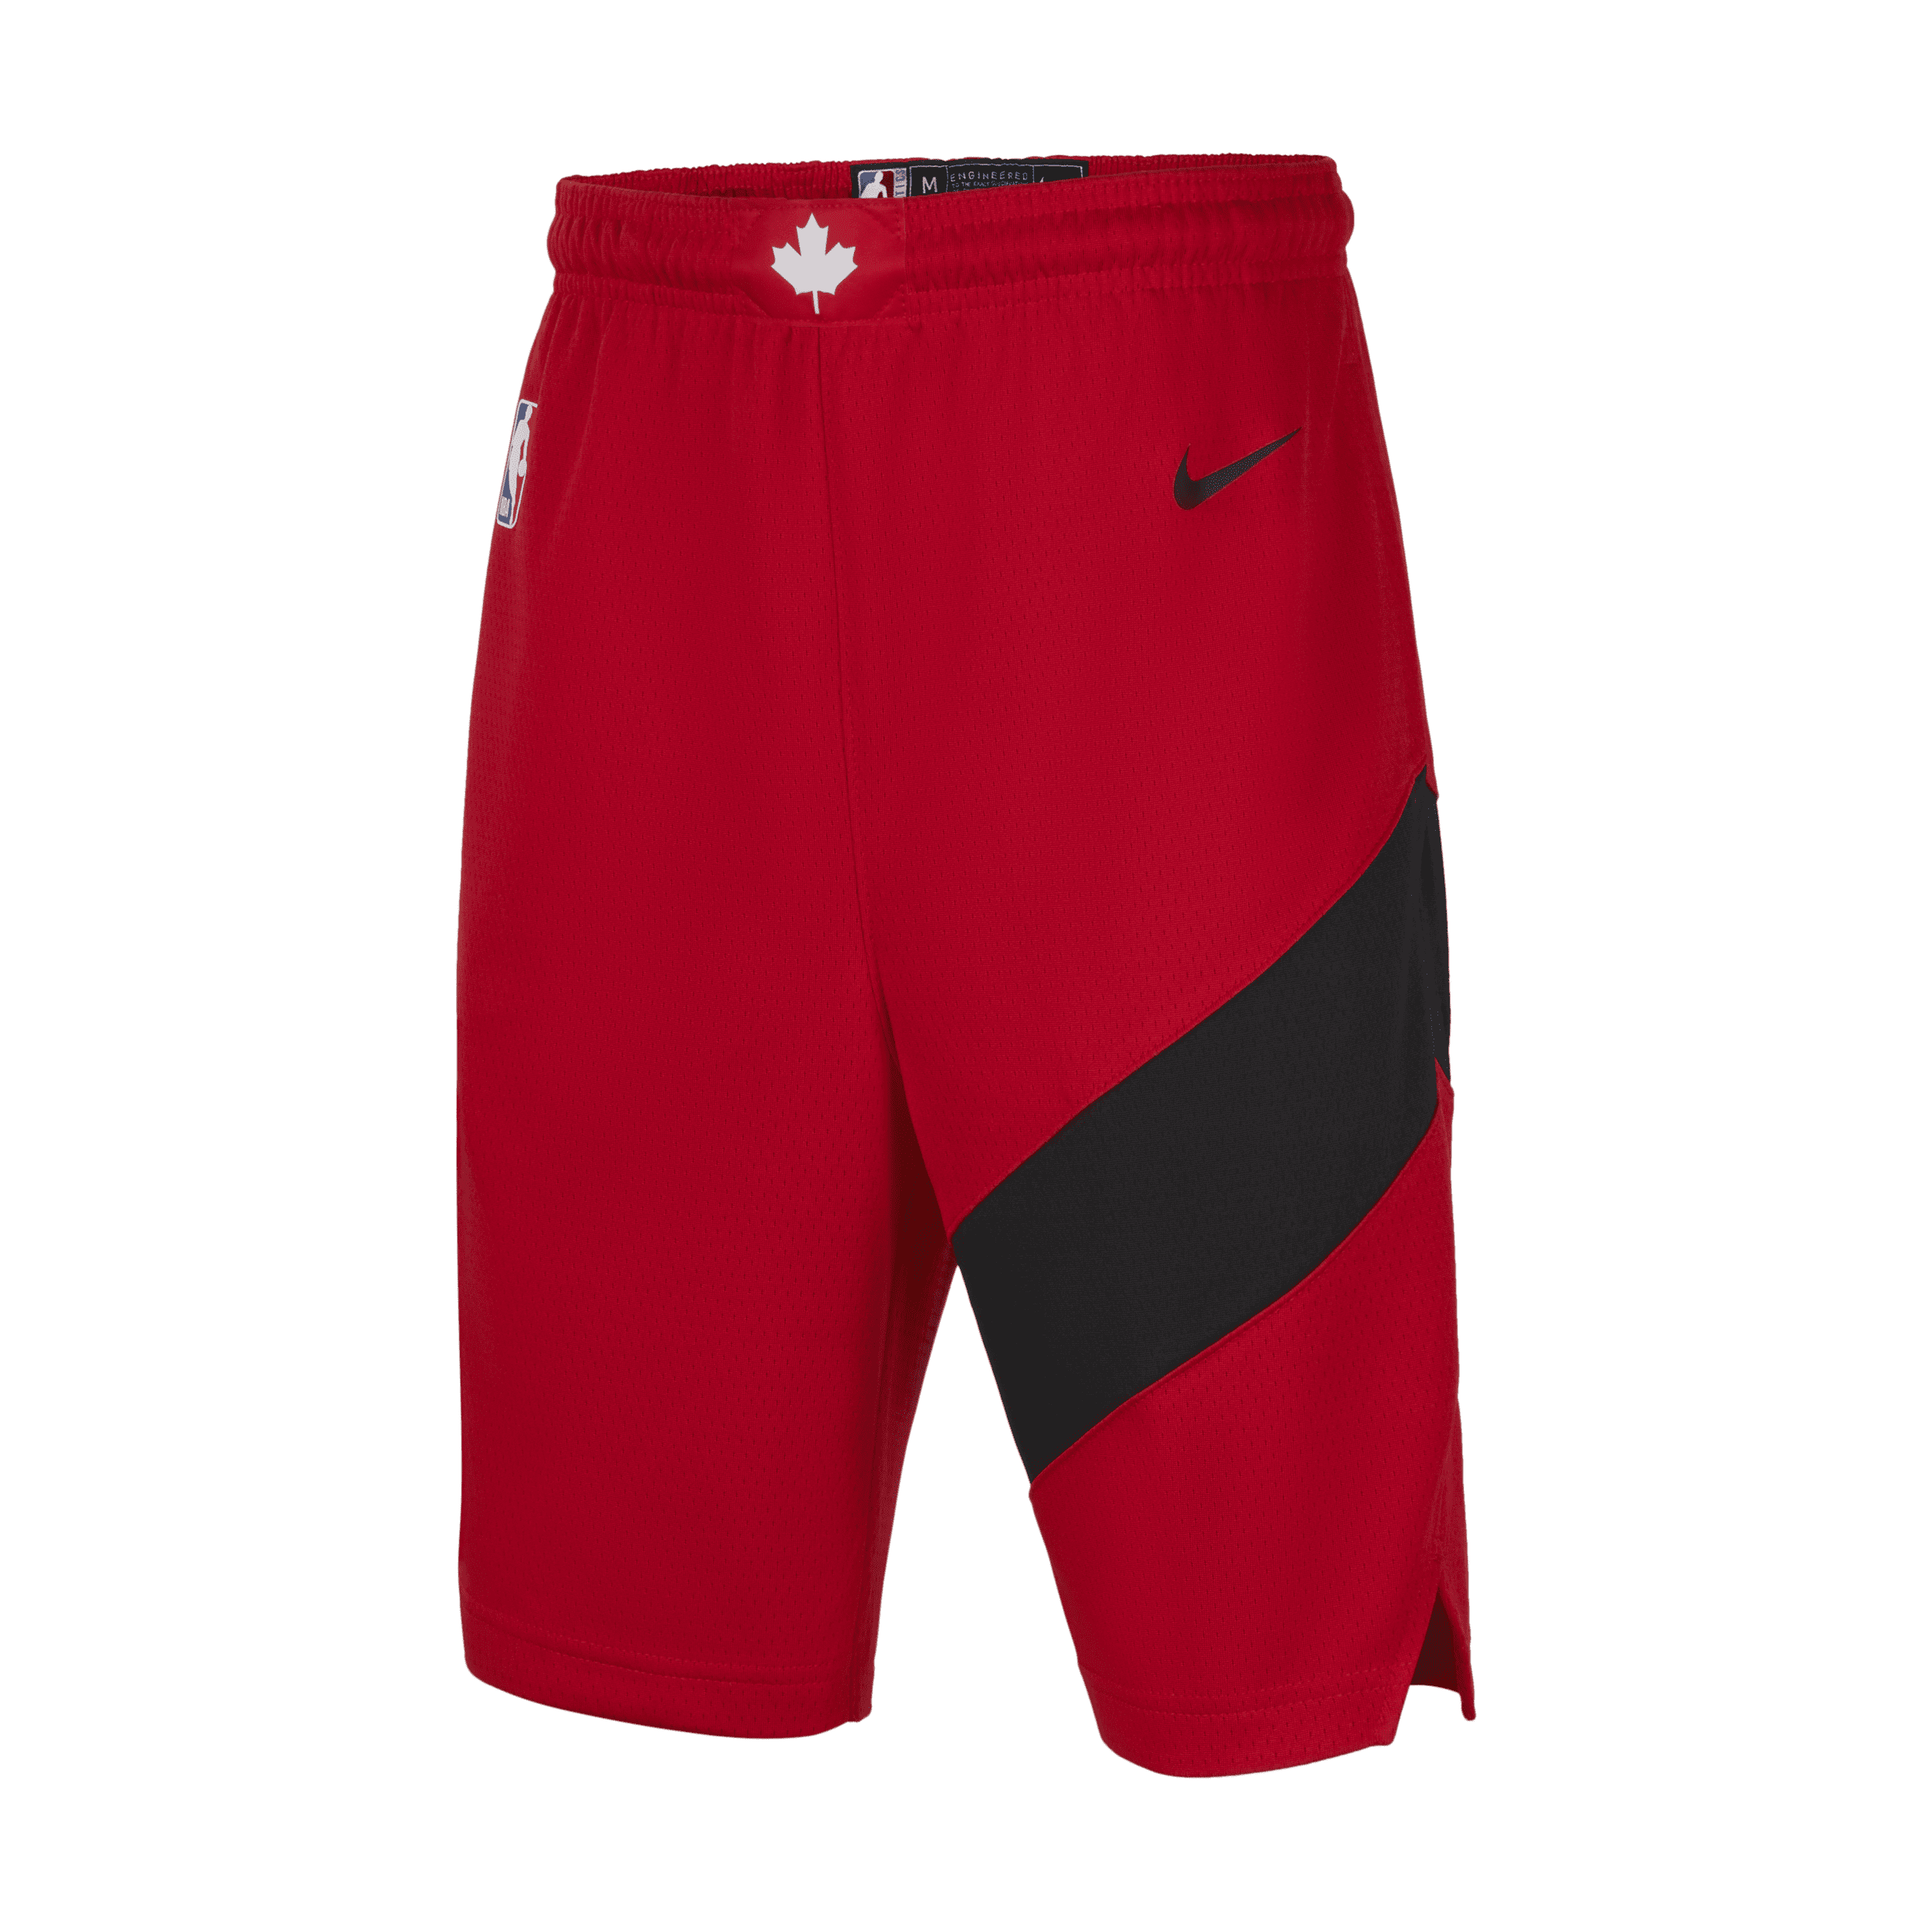 Toronto Raptors Pantalón corto Nike NBA Swingman - Niño/a - Rojo